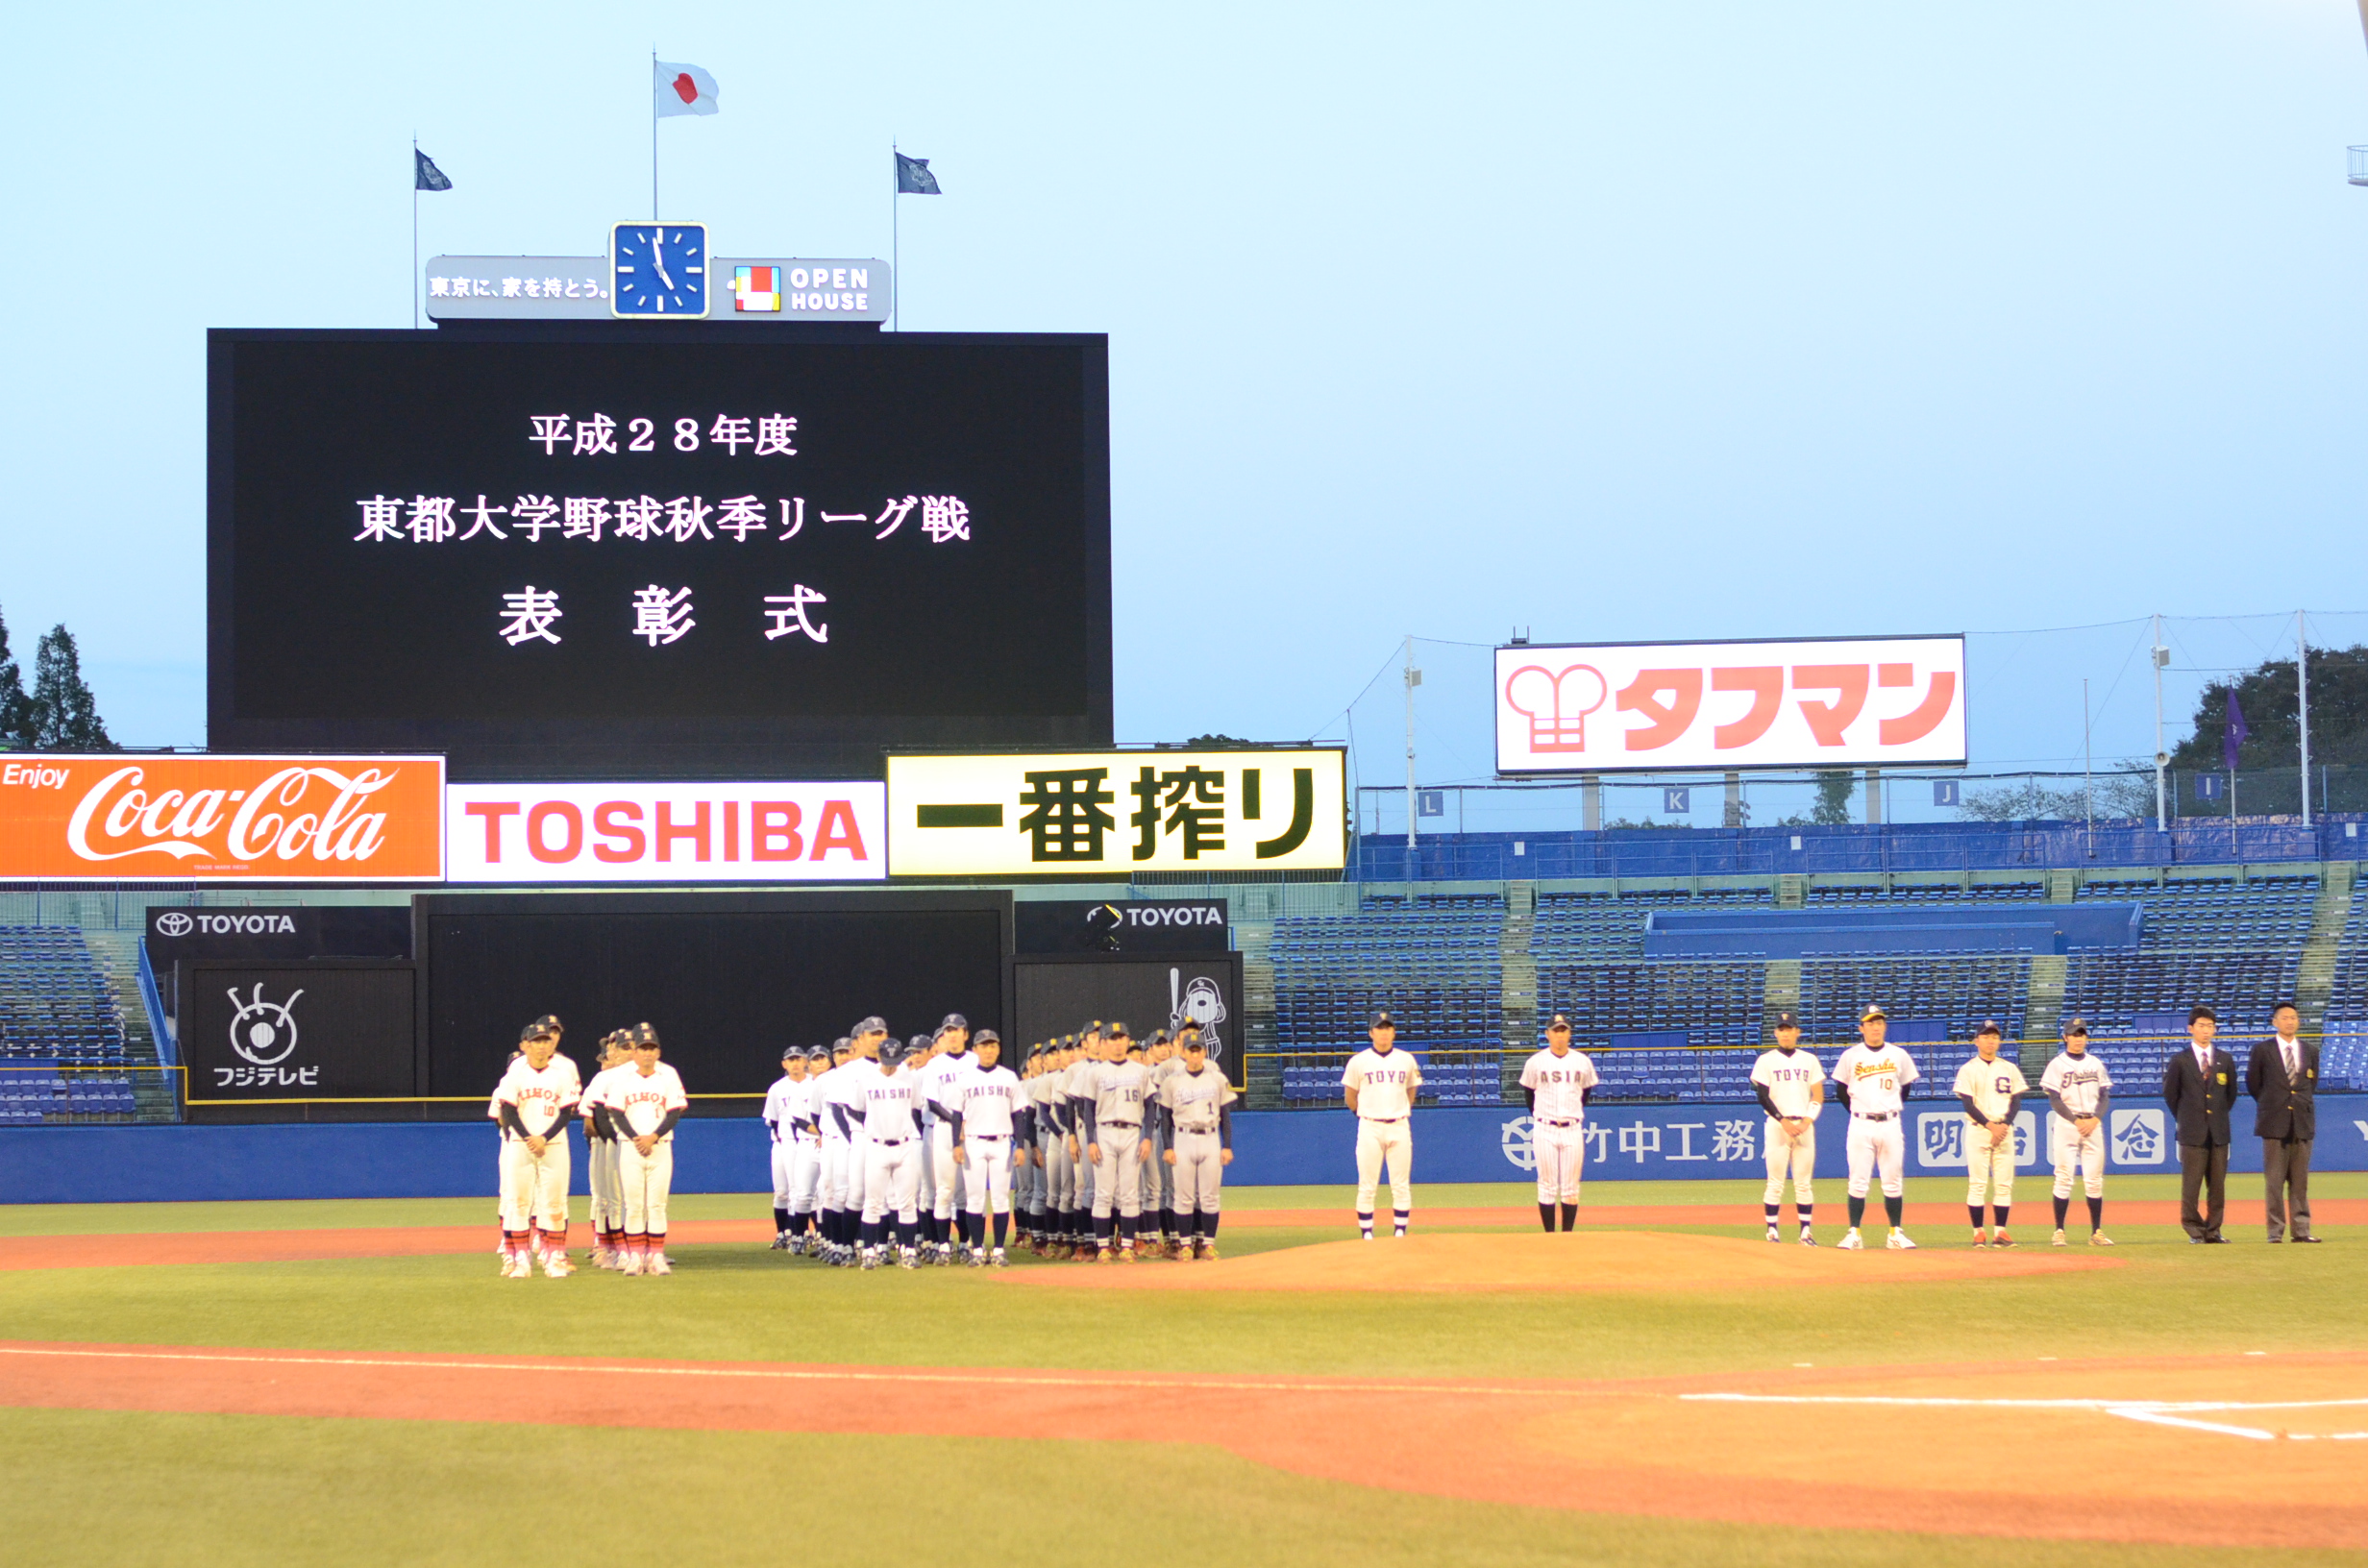 東都大学野球 16年秋季リーグ戦 閉会式に参席 Shien Blog Shien Blog ミニミニ城西